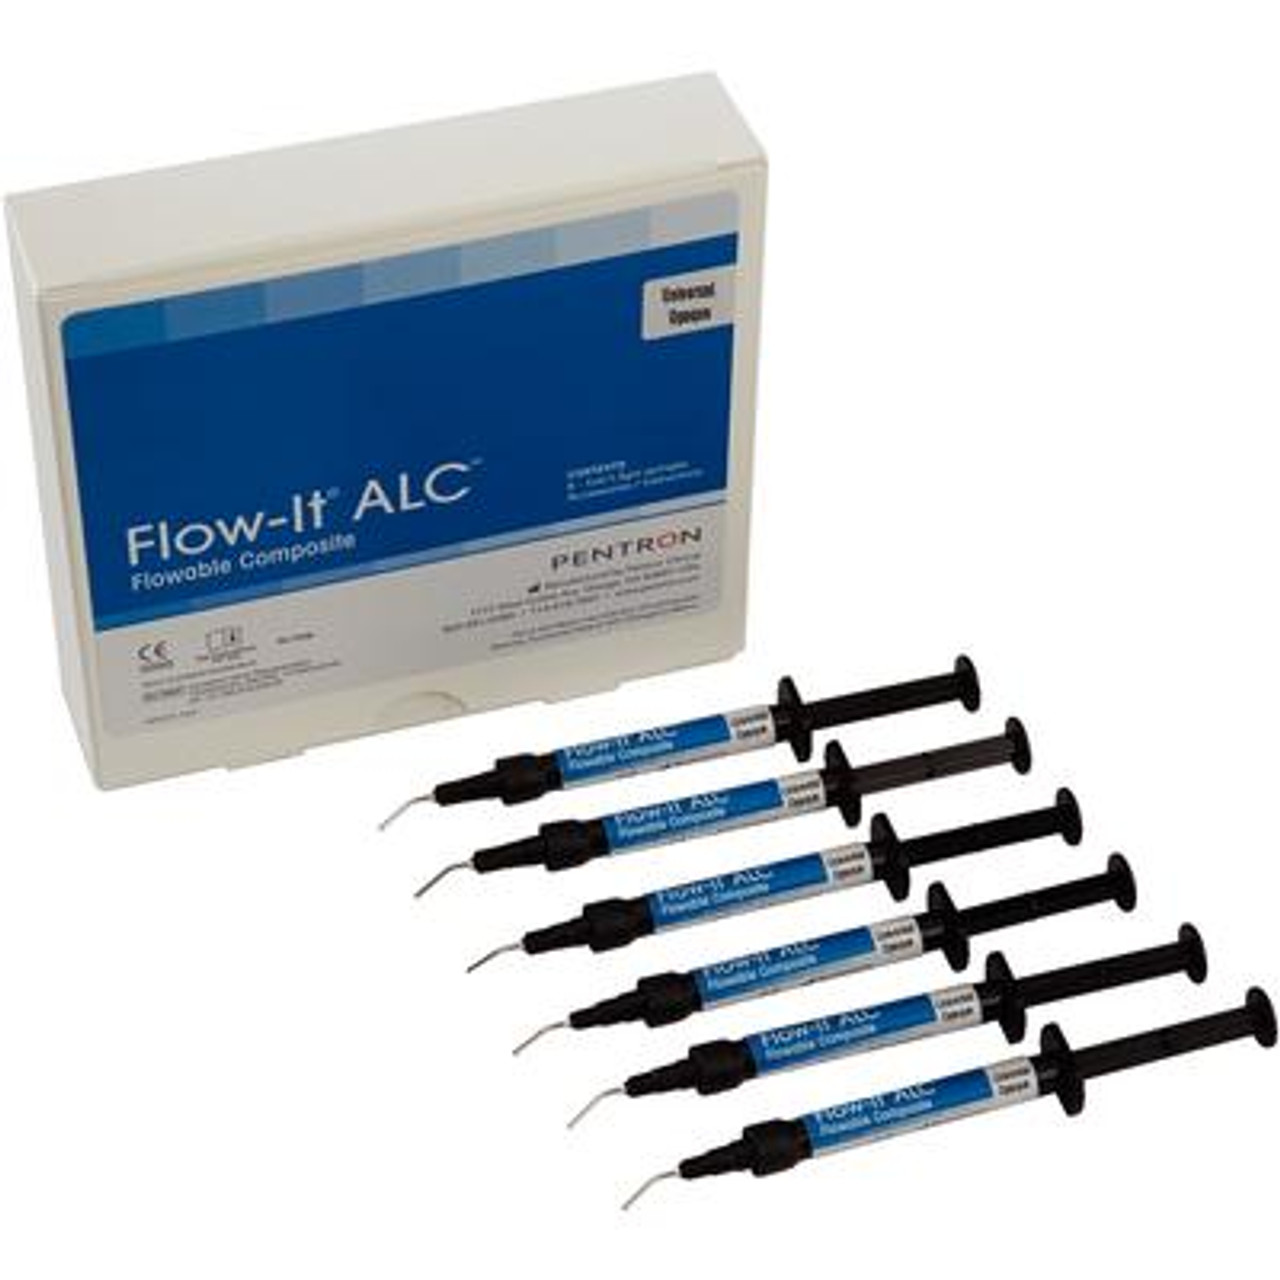 Pentron Flow-It ALC Flowable Composite Universal Opaque A0 Value Pack Syringe 6x1.5g & Tips